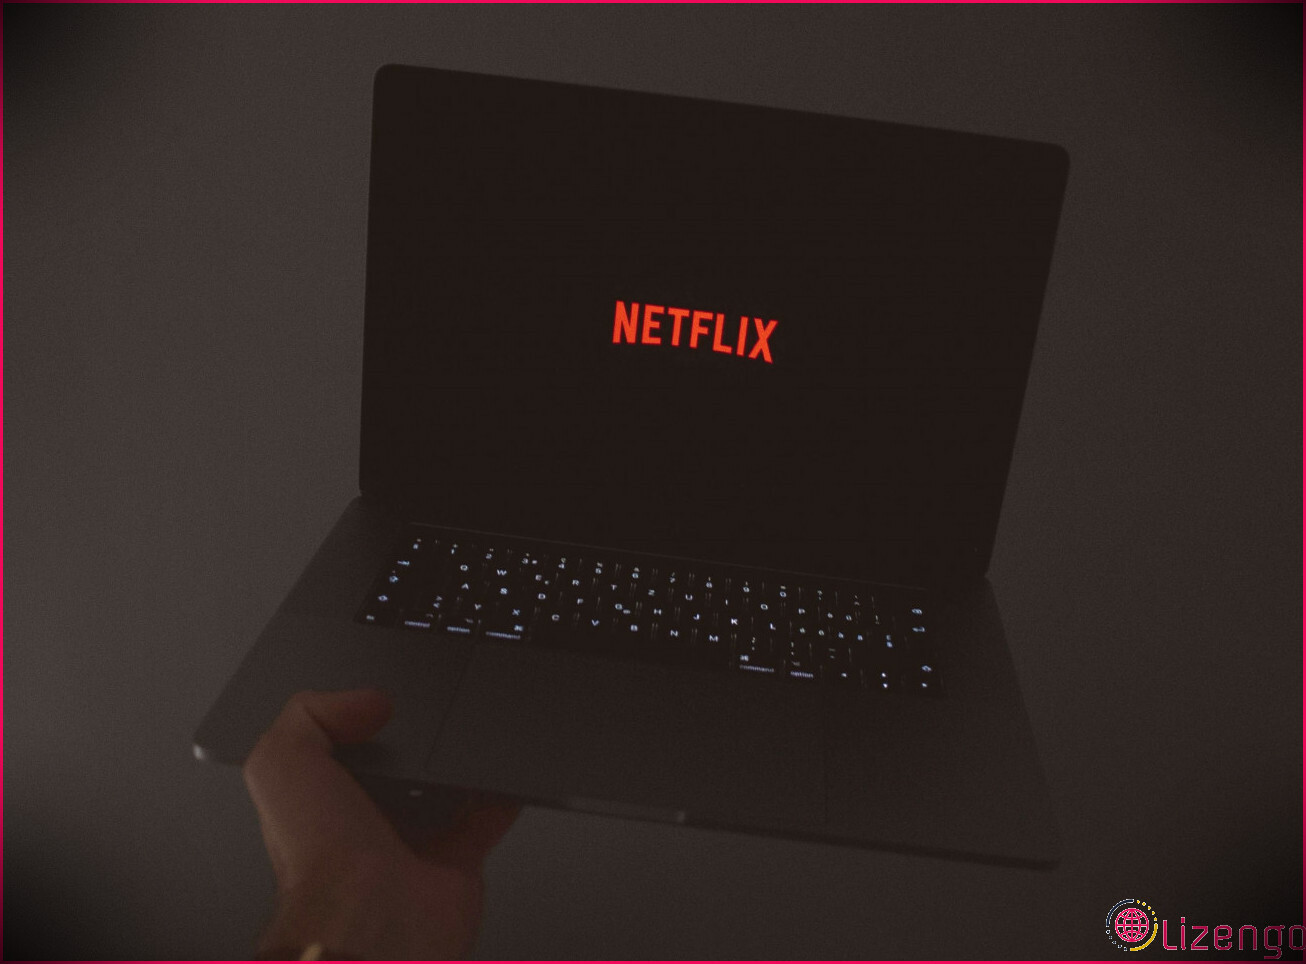 Une personne tenant un ordinateur portable avec le logo Netflix sur l'écran.